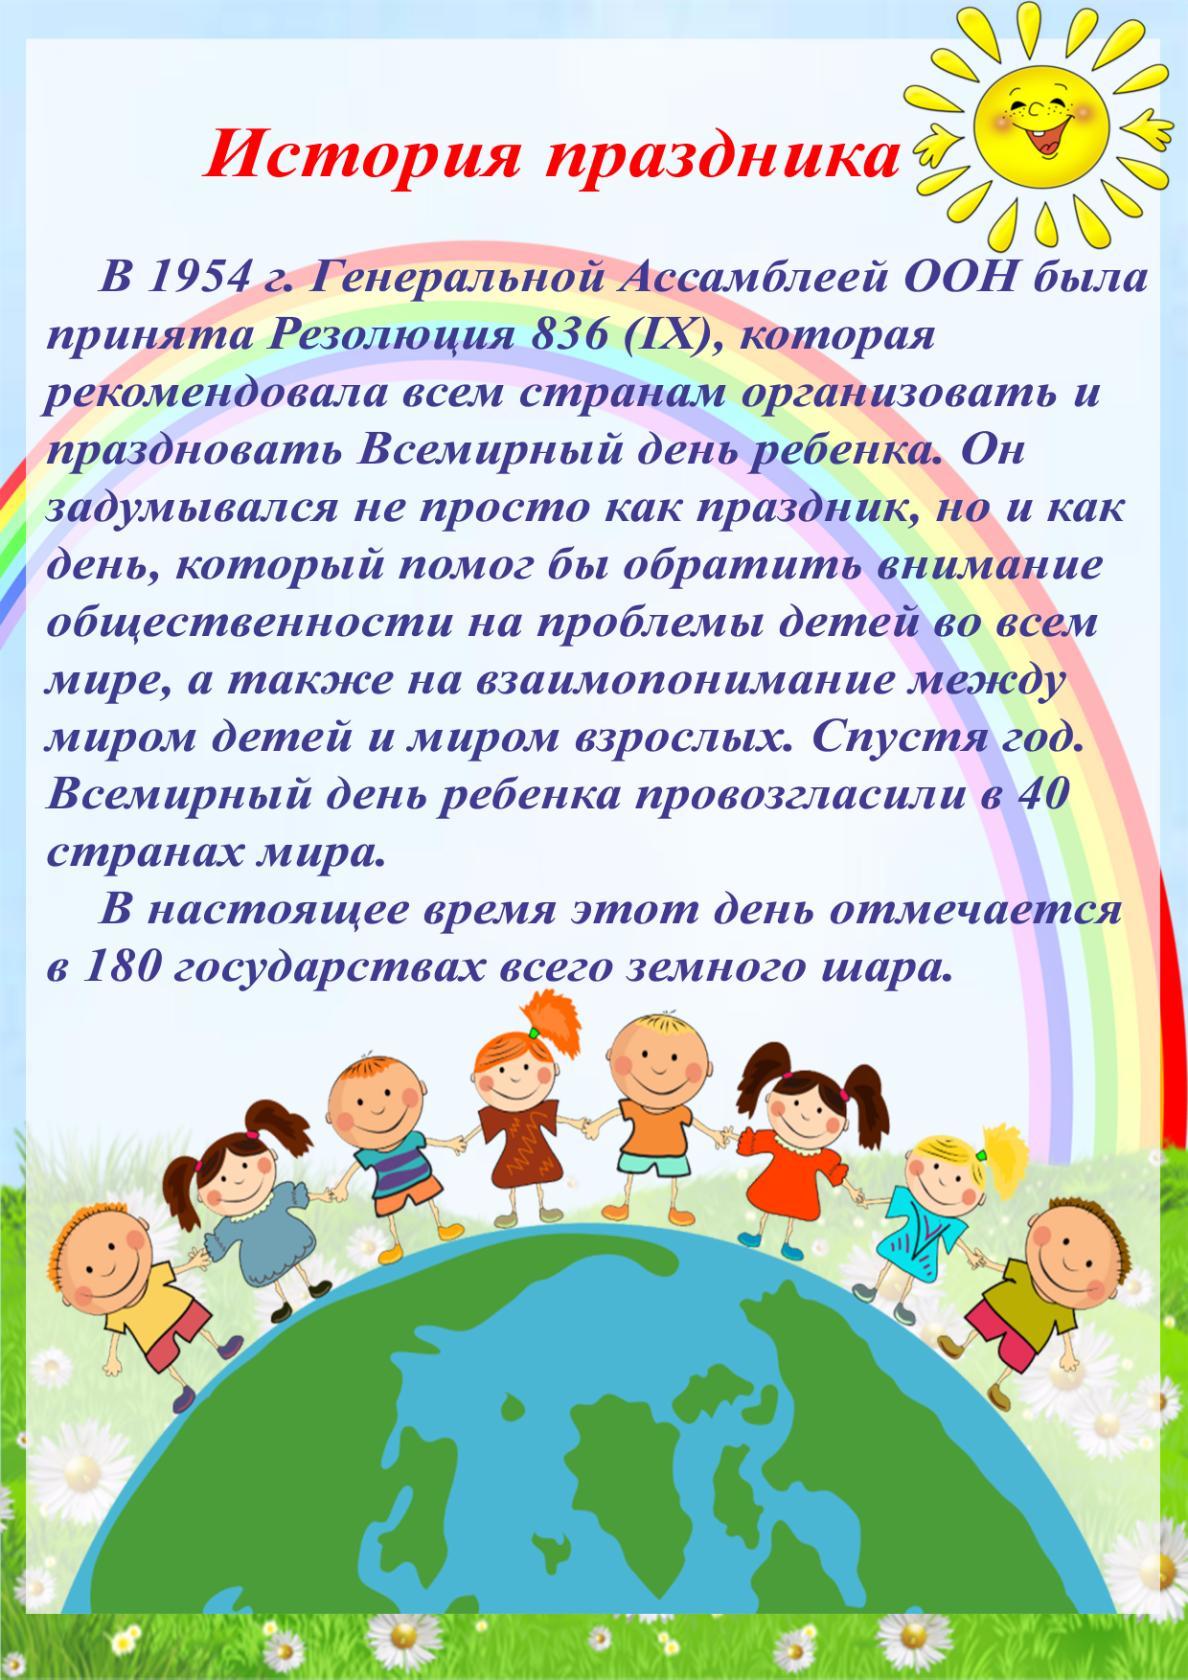 20 Ноября Всемирный день ребёнка мероприятия в библиотеке